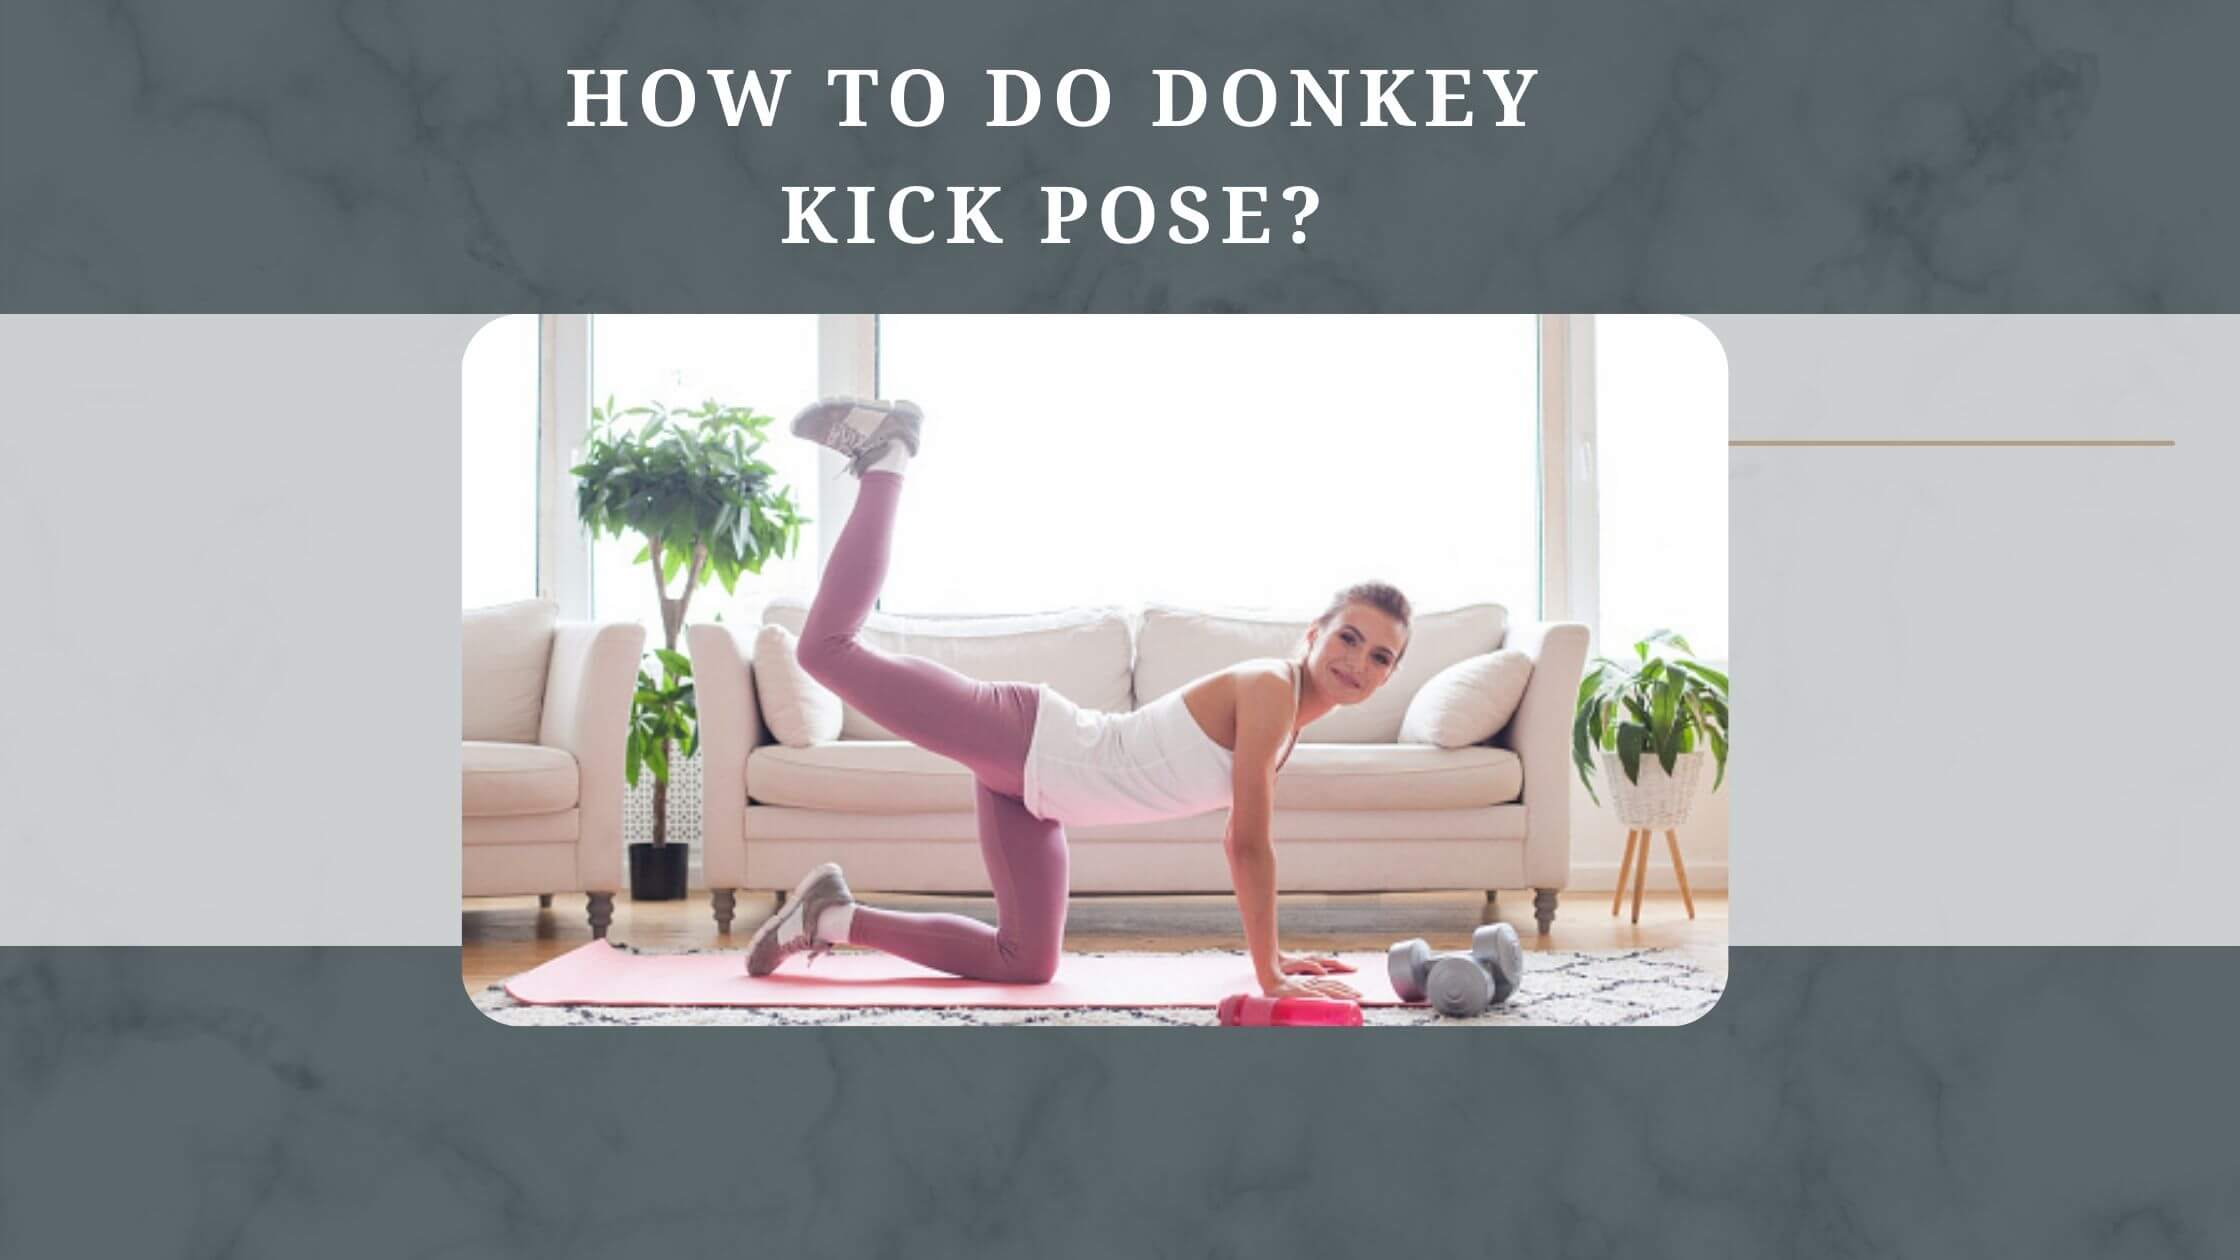 How to do Donkey kick pose?